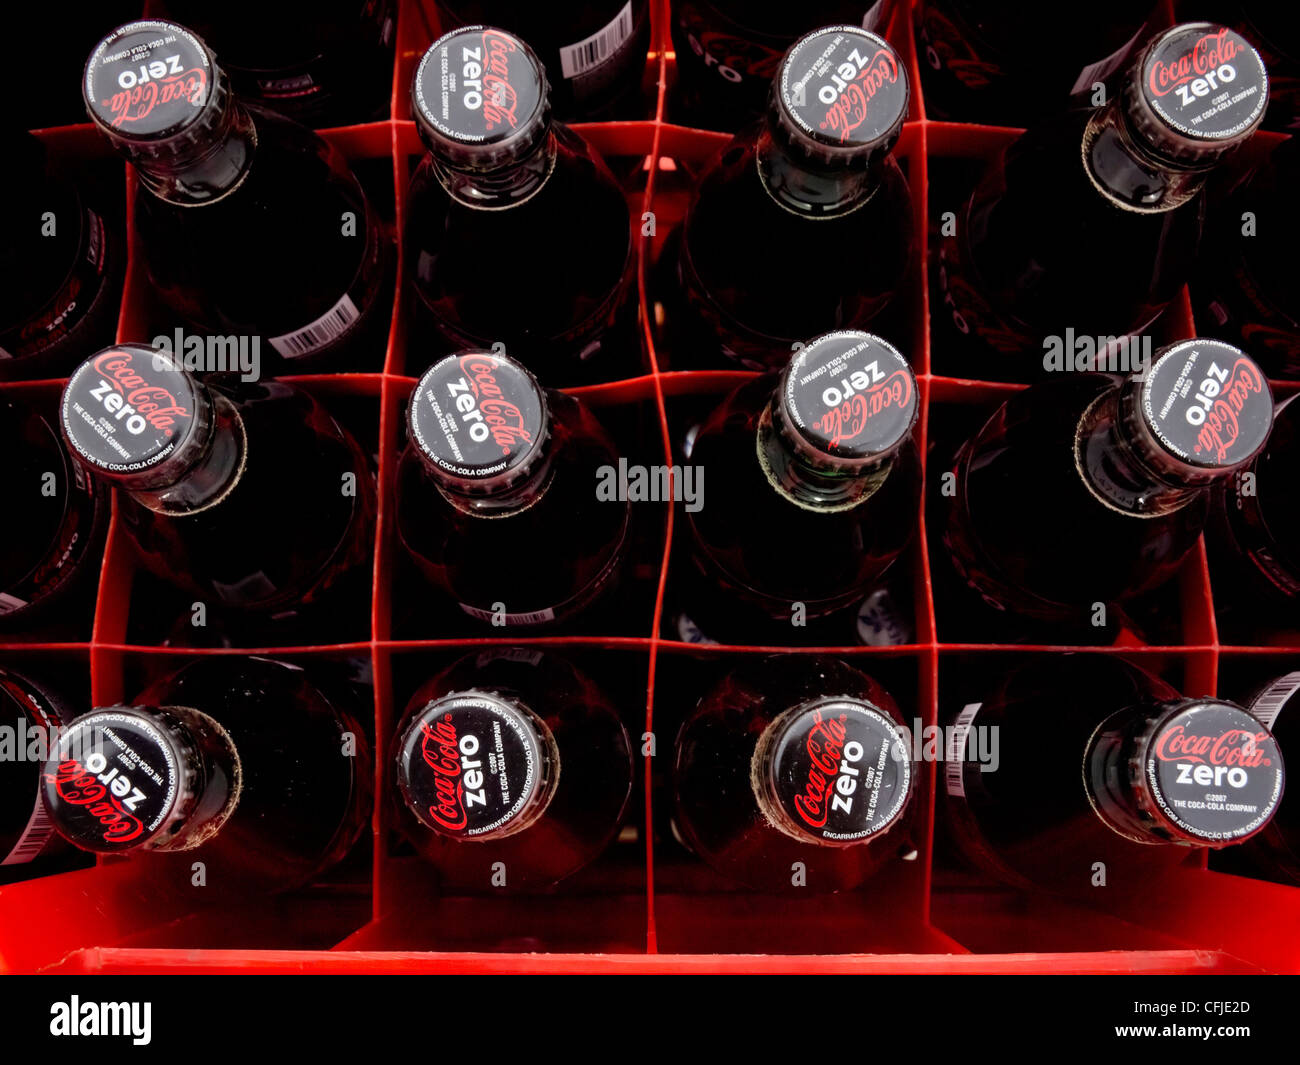 Crate full of Coca Cola Zero bottles Stock Photo